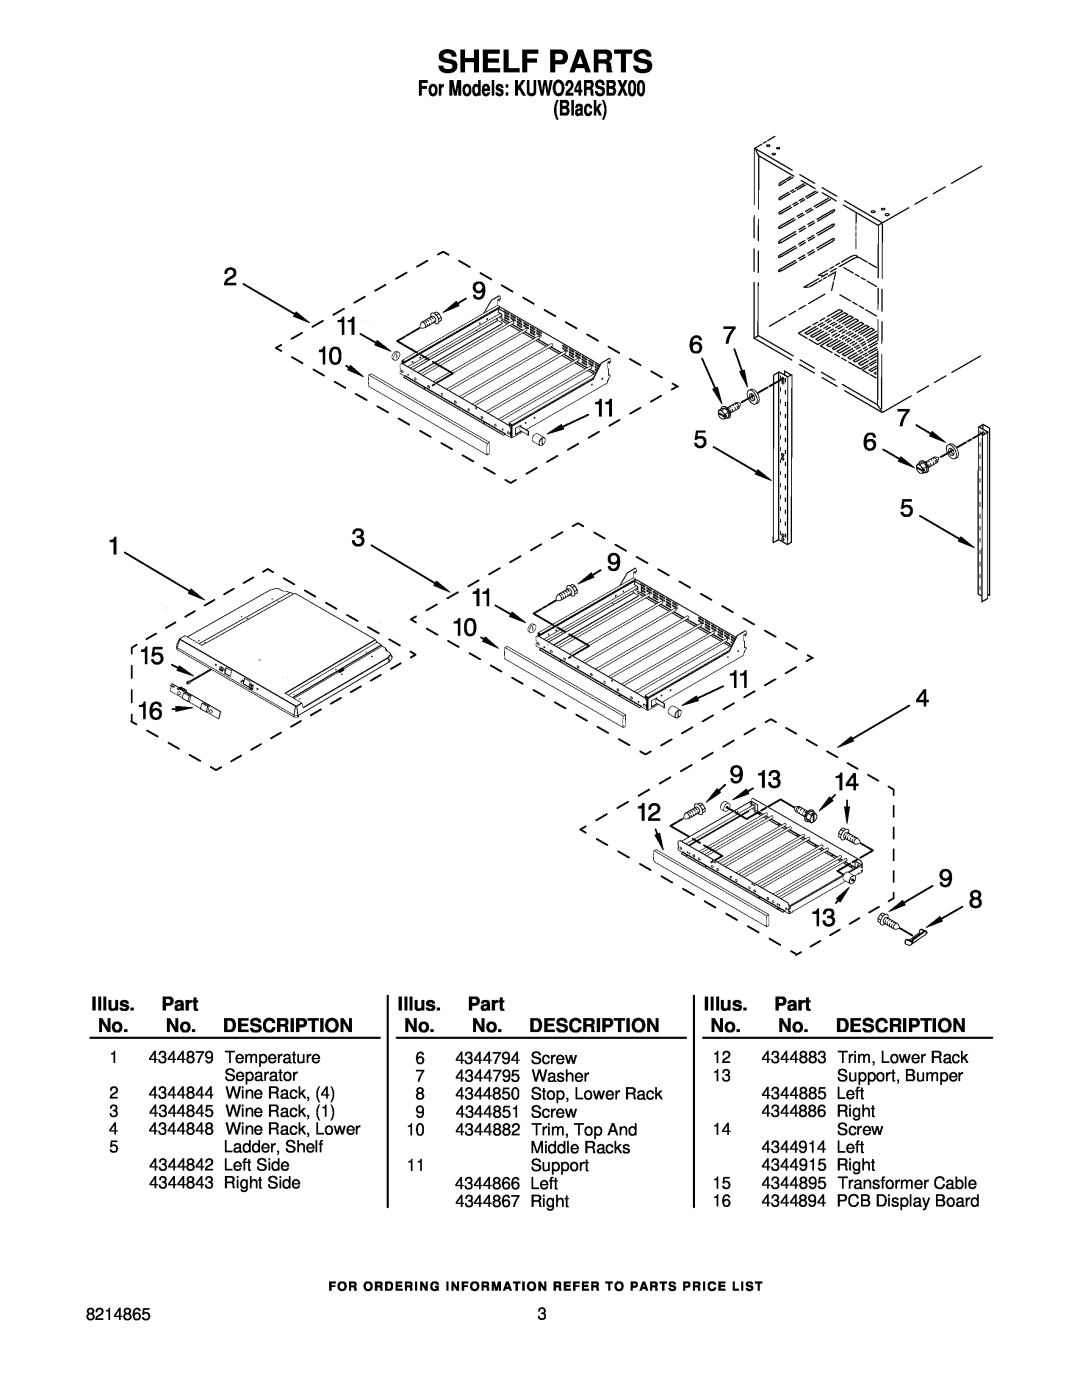 KitchenAid KUWO24RSBX00 manual Shelf Parts, Illus. Part No. No. DESCRIPTION 